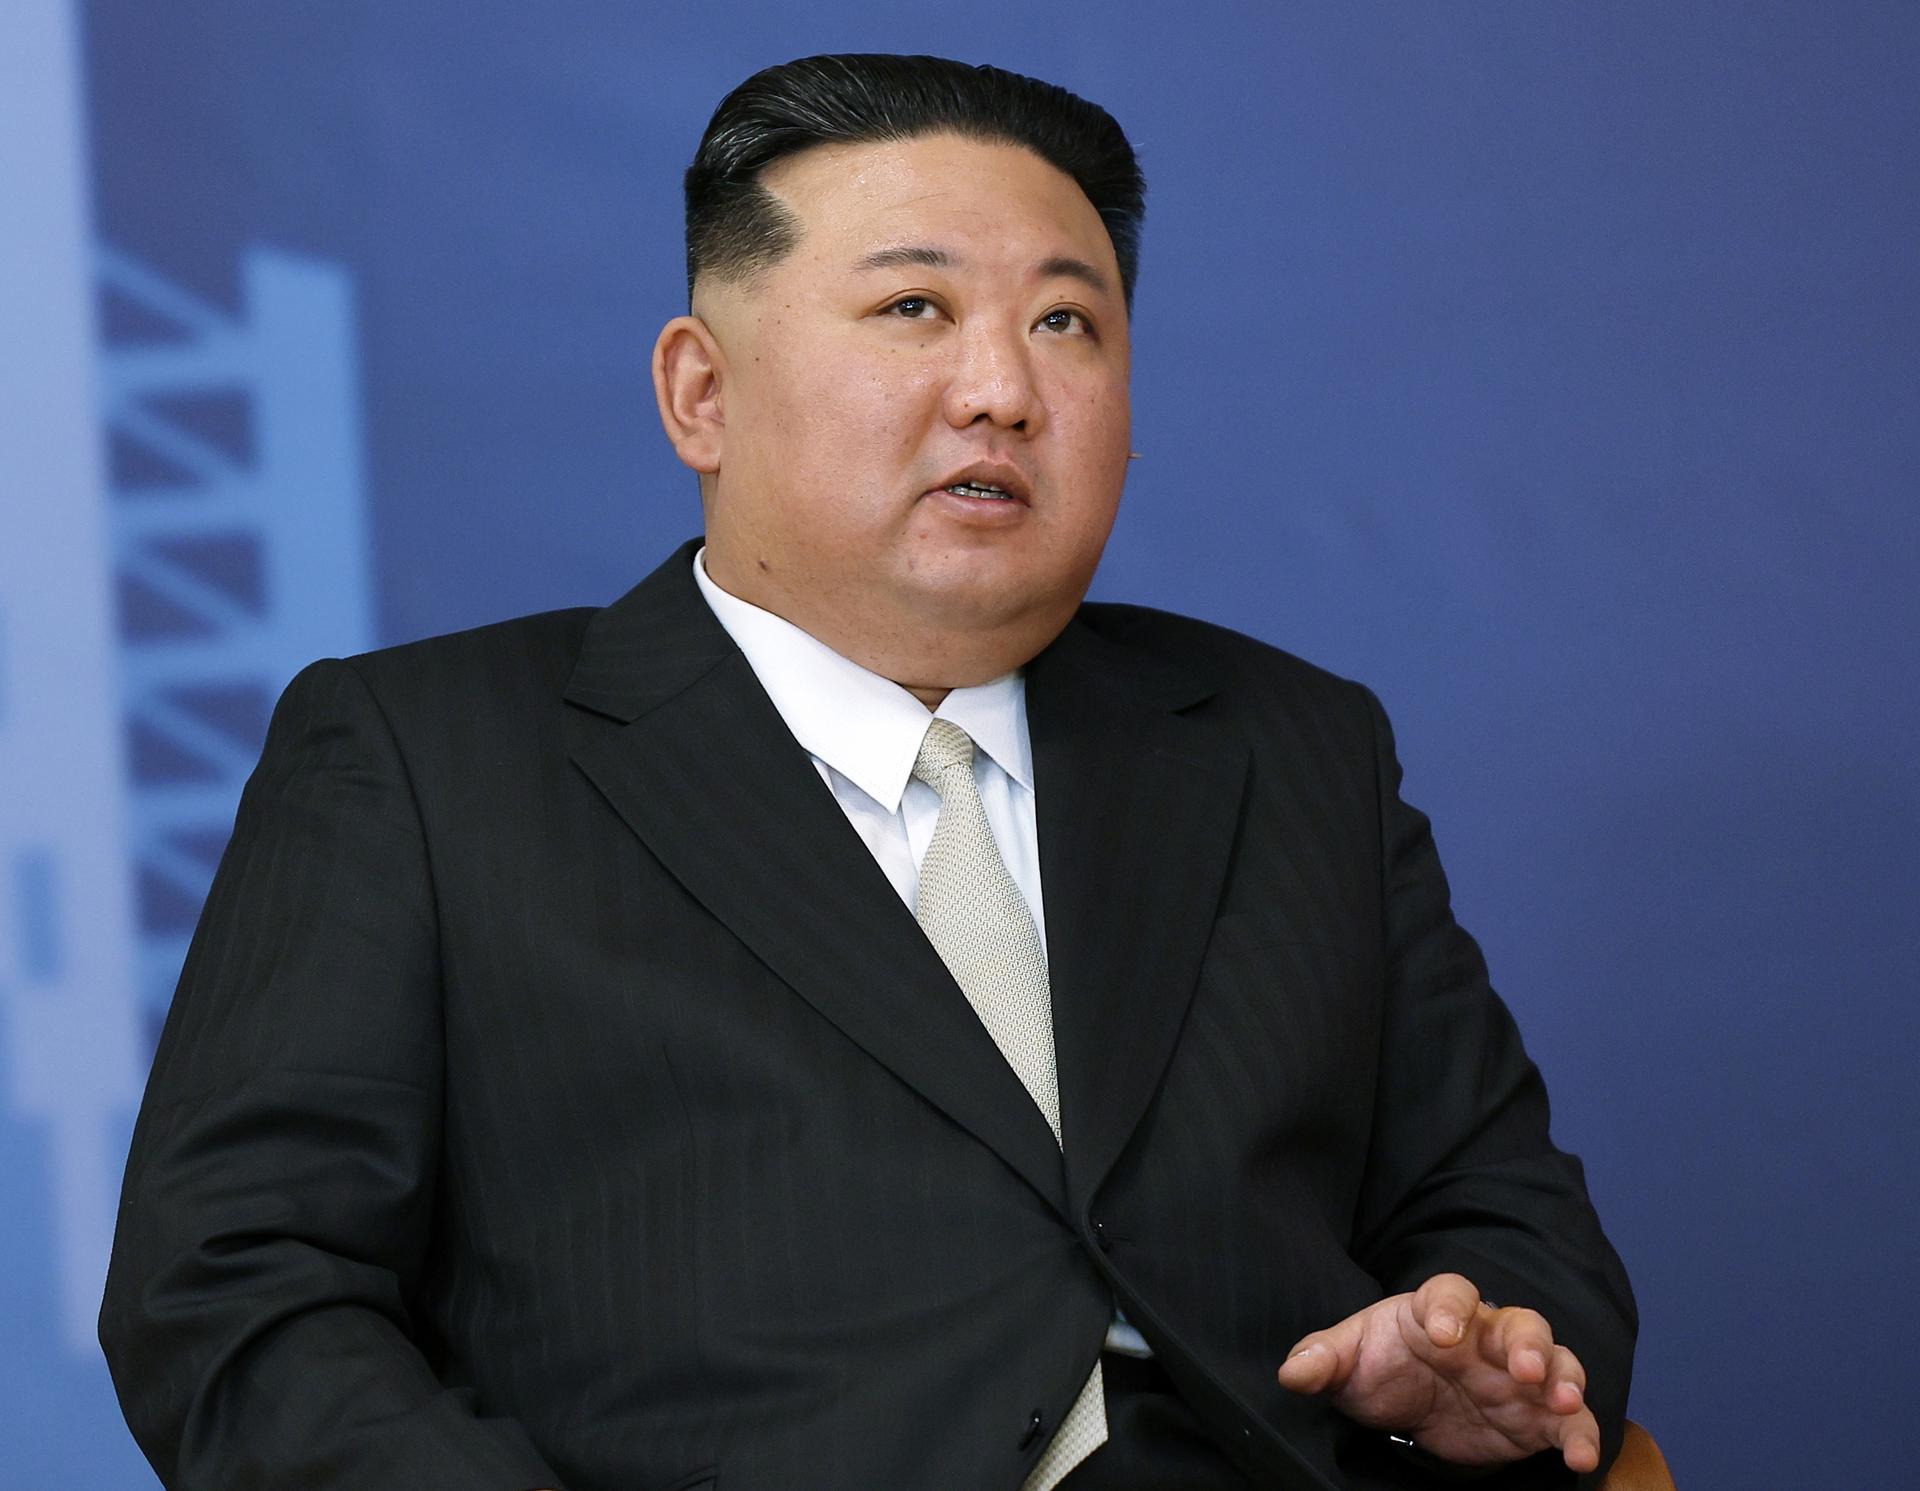 El líder norcoreano, Kim Jong-un, en una foto de archivo. EFE/Vladimir Smirnov